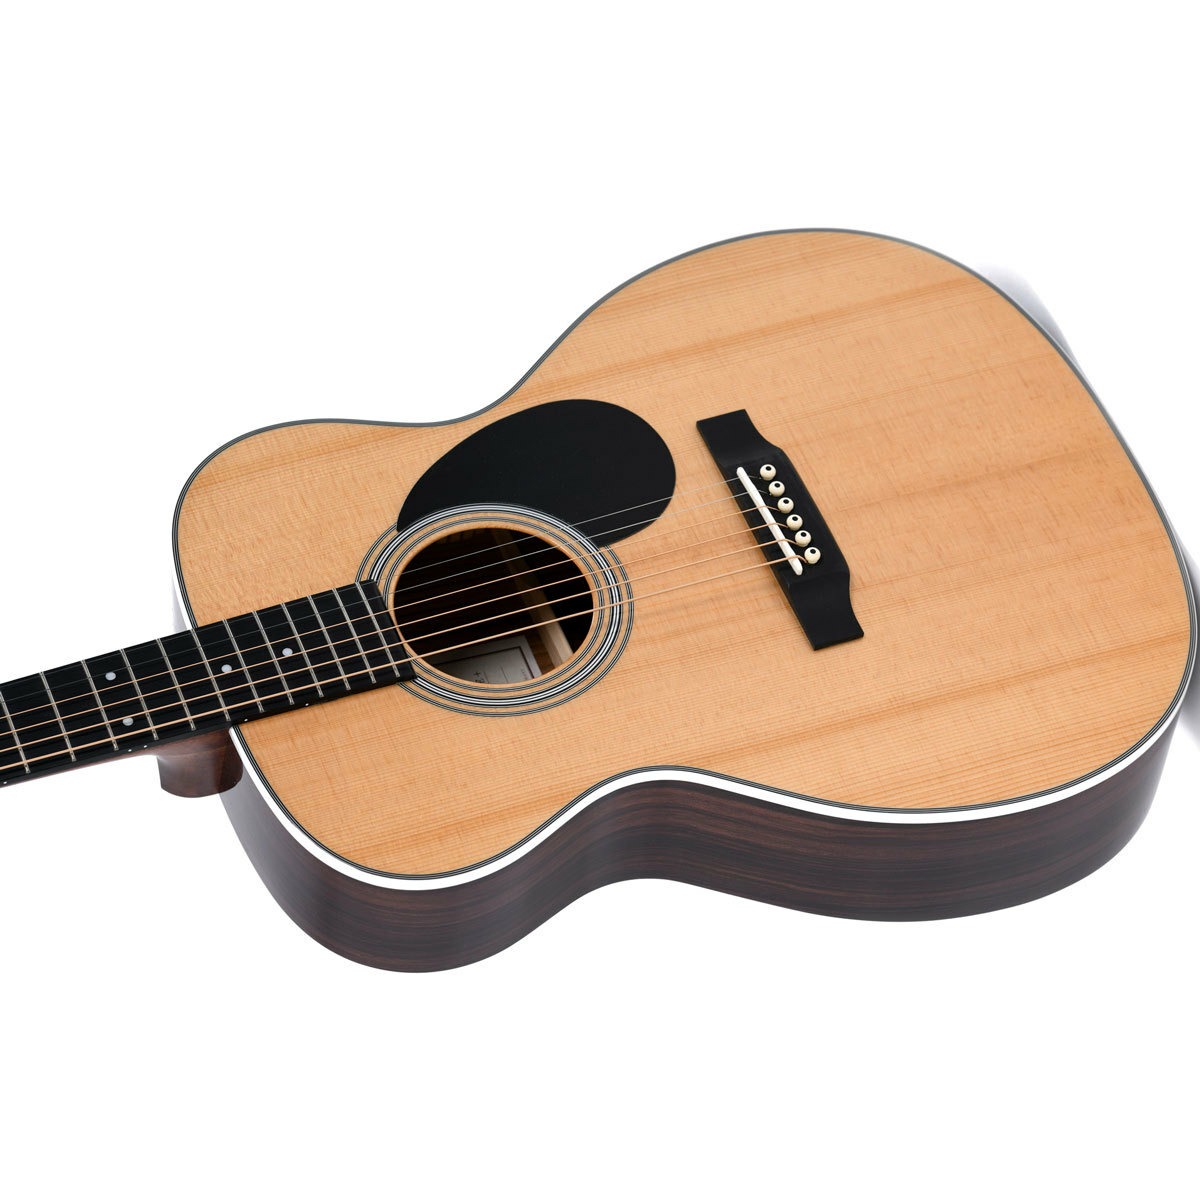 Гитара 1 2 купить. Электроакустическая гитара Sigma OMT-1ste+. Акустическая гитара Sigma OMT-1. Электроакустическая гитара Sigma OMT-1ste+ магазин в Костроме. Гитара 1/2.